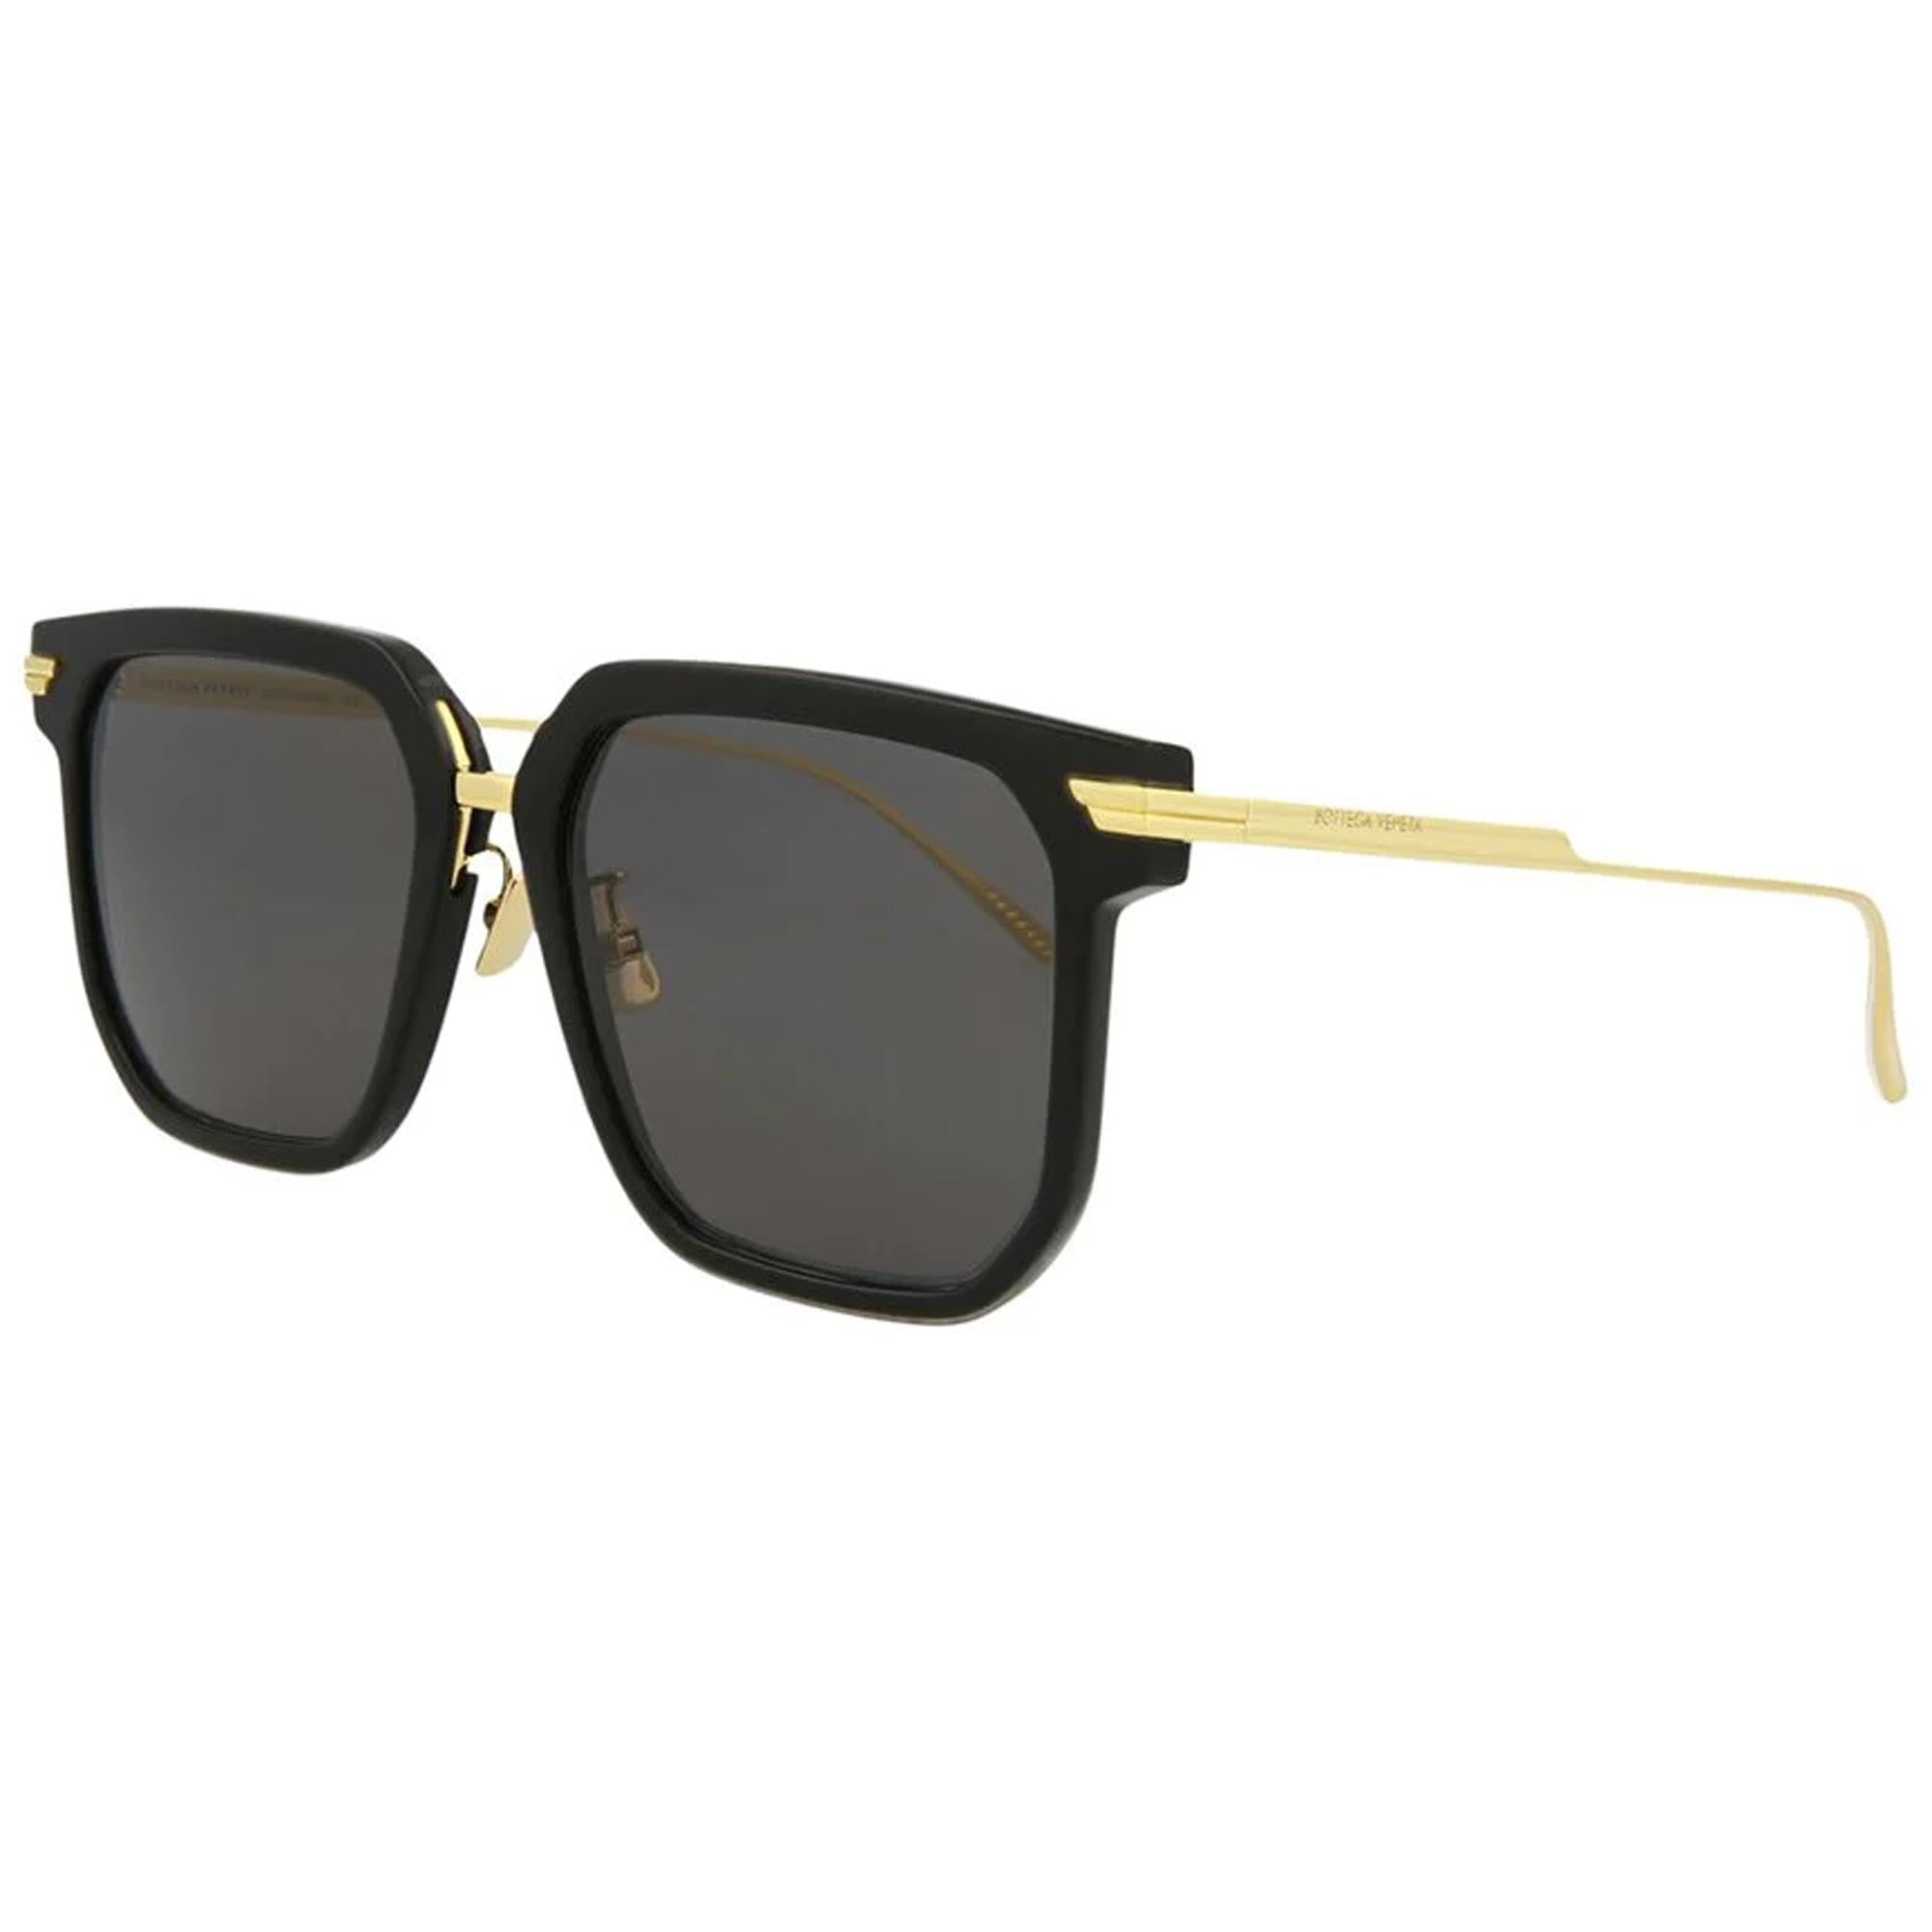 Bottega Veneta Women's Sunglasses - Black and Gold Square Frame / BV1083SA-30009178001